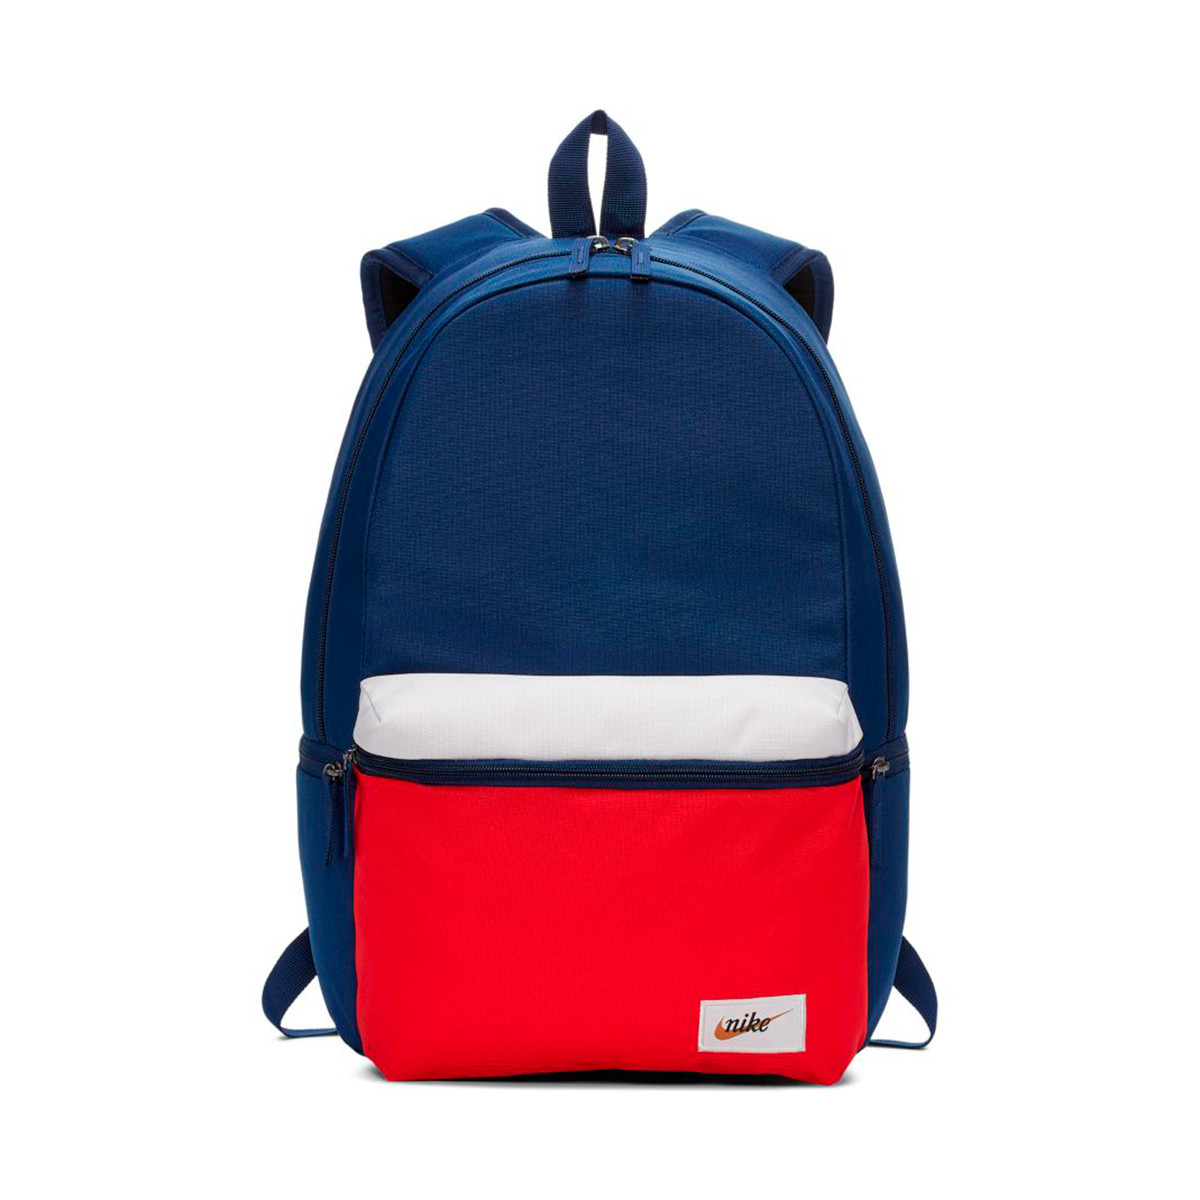 nike backpack red